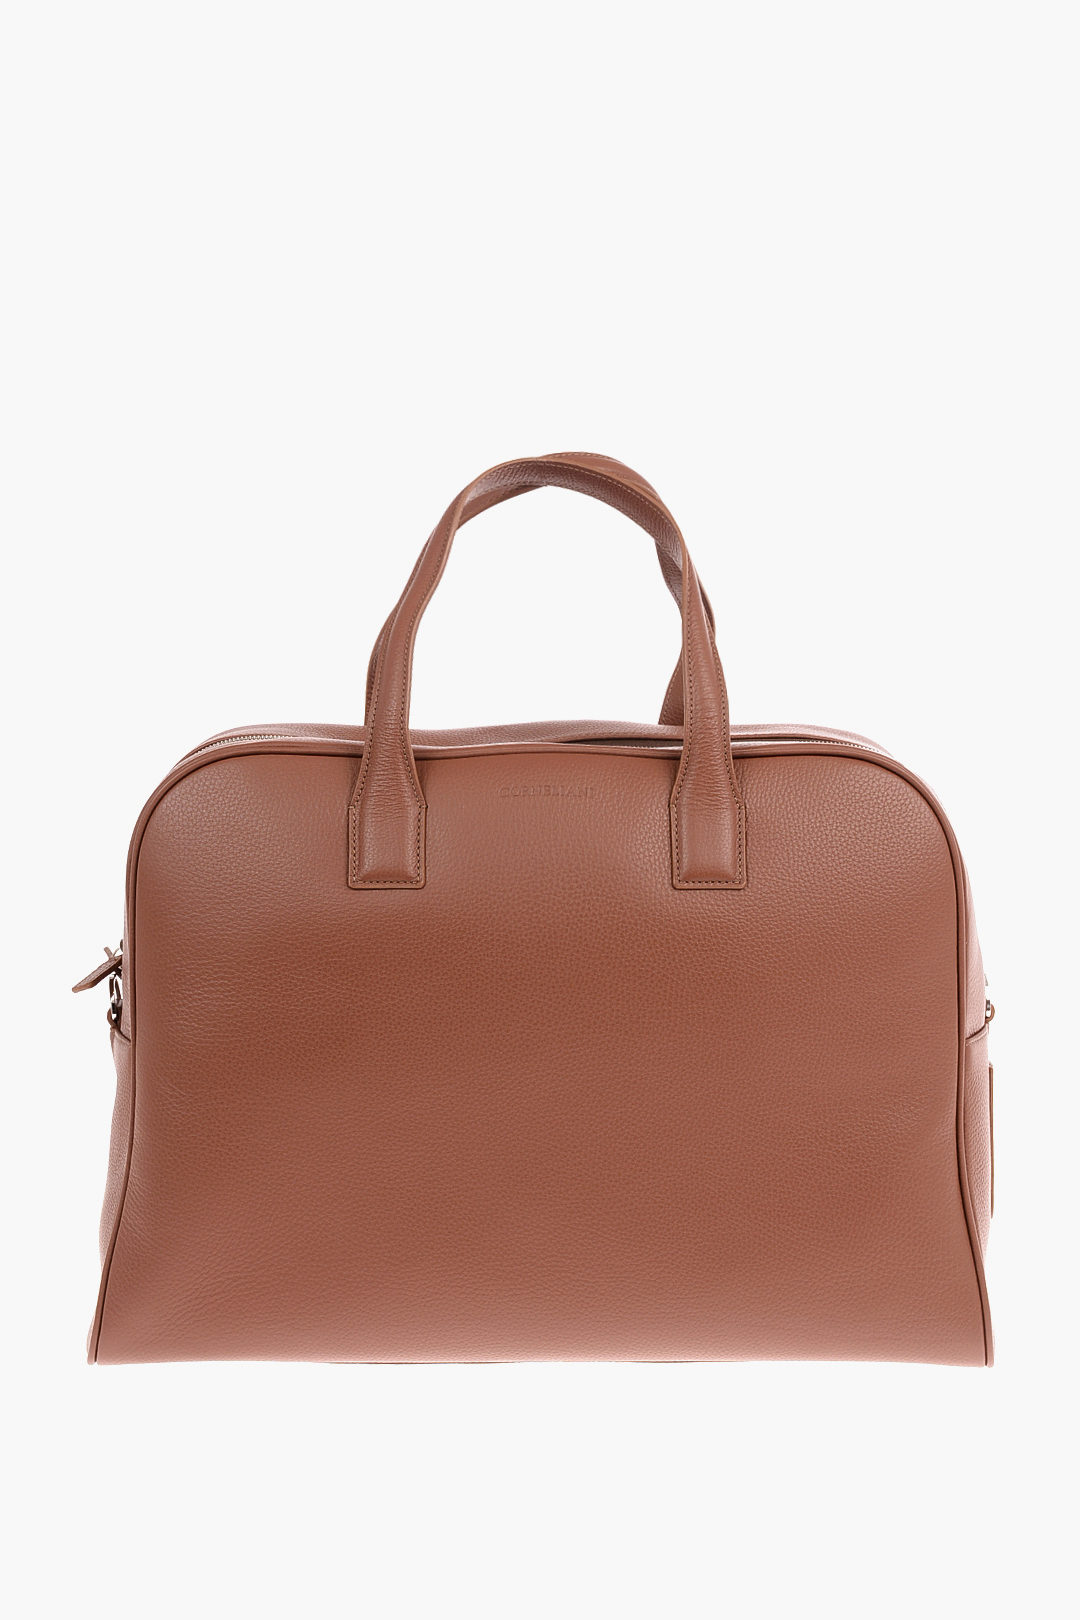 Corneliani Hammered Leather BOTTALATA Travel Bag men - Glamood Outlet